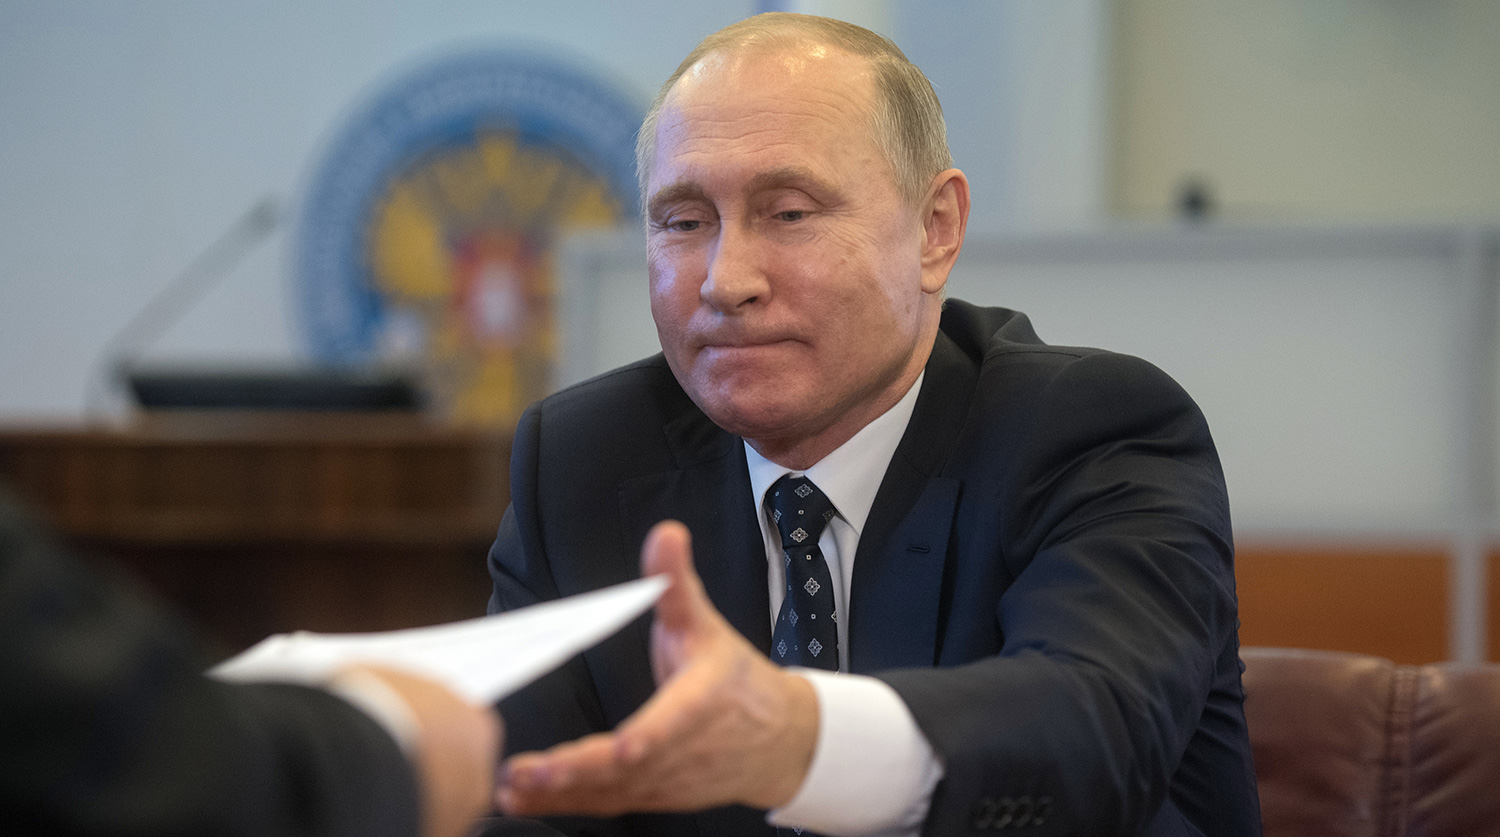 На выборах президента России Путин набирает более 70% голосов - экзит-поллы и ЦИК